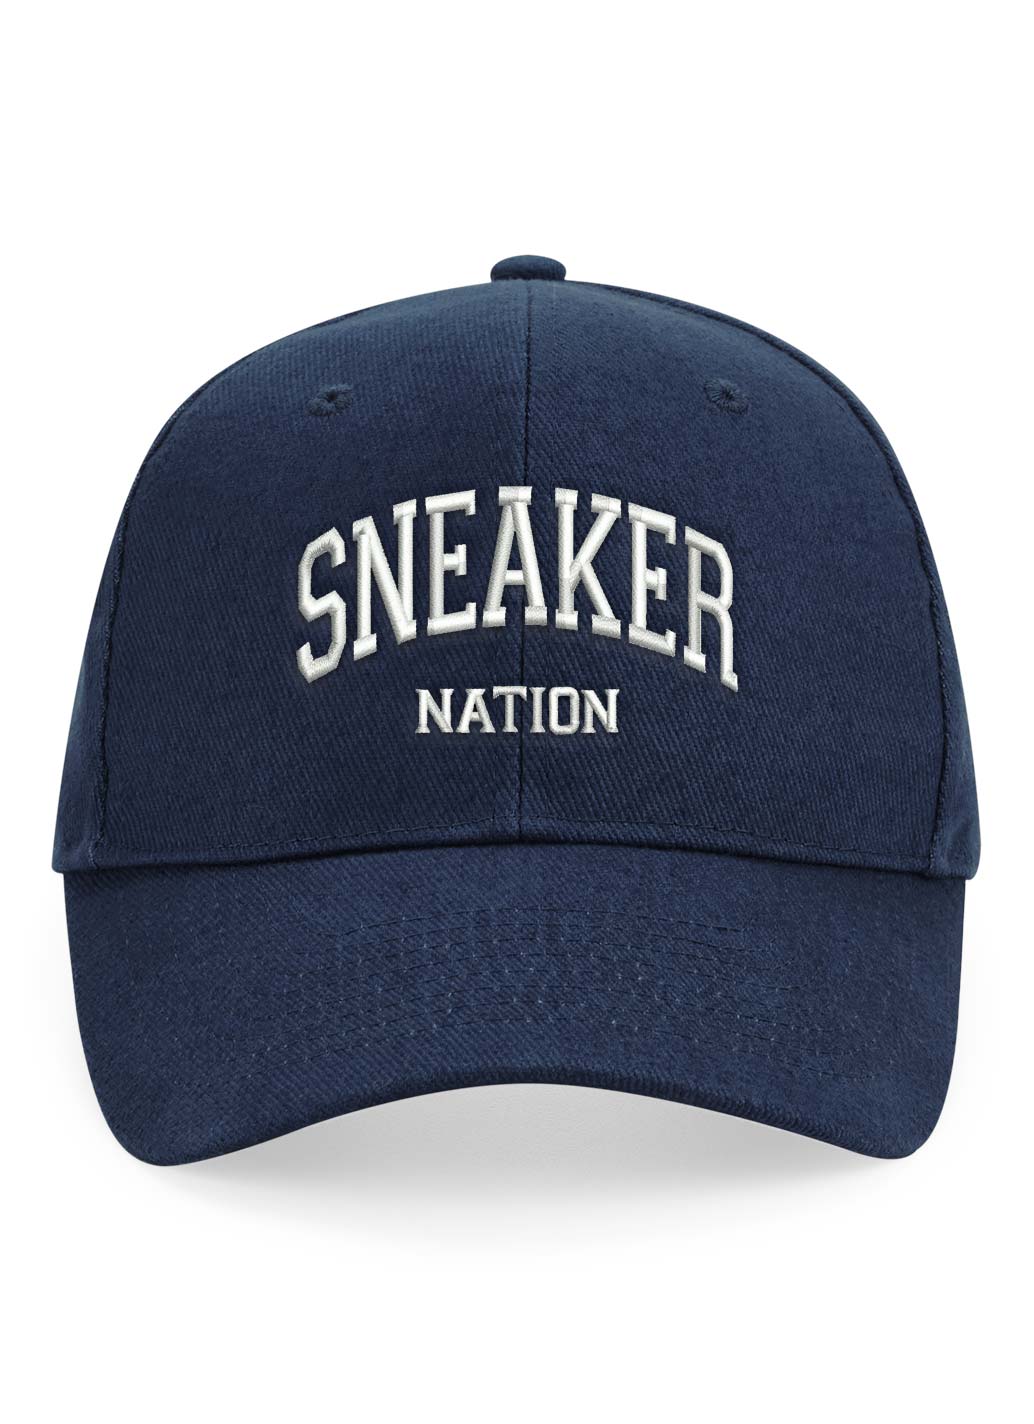 Sneaker Nation Cap - Navy